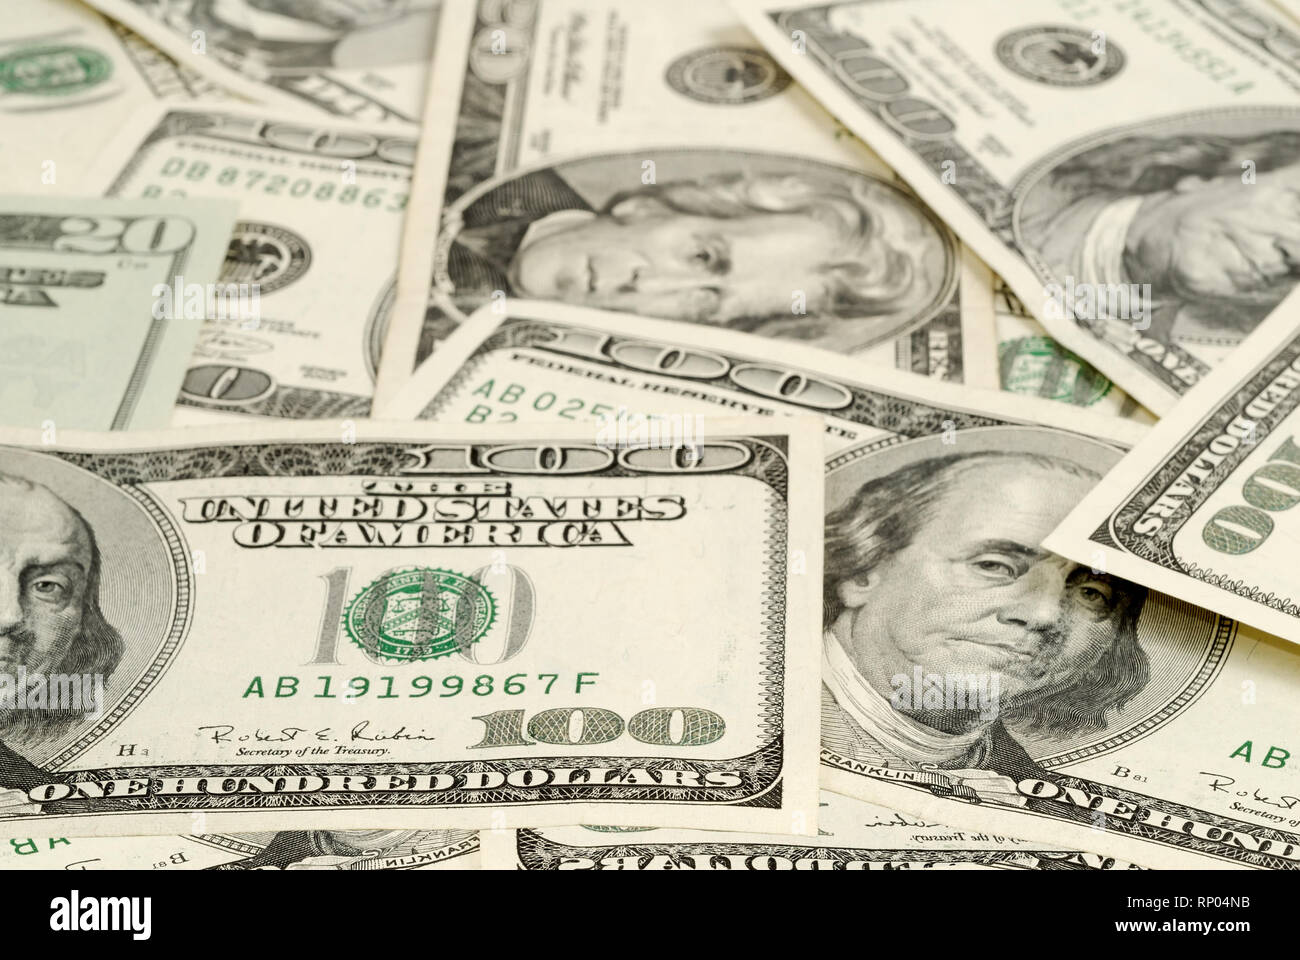 Close-up on many hundred-dollar bills Stock Photo